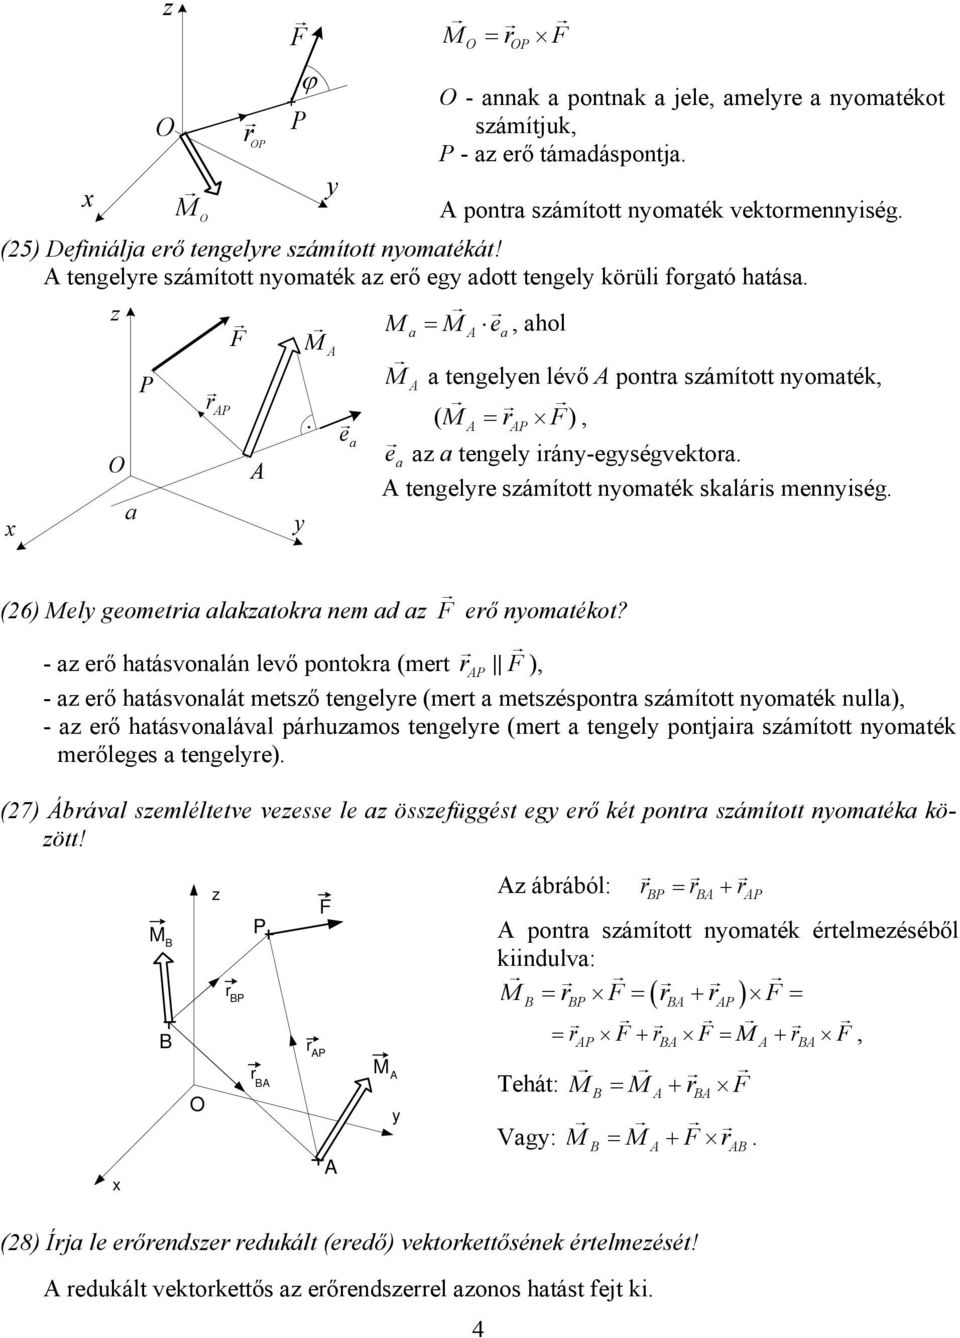 omaték skalárs meség a P (26) Mel geometra alakzatokra em ad az erő omatékot?